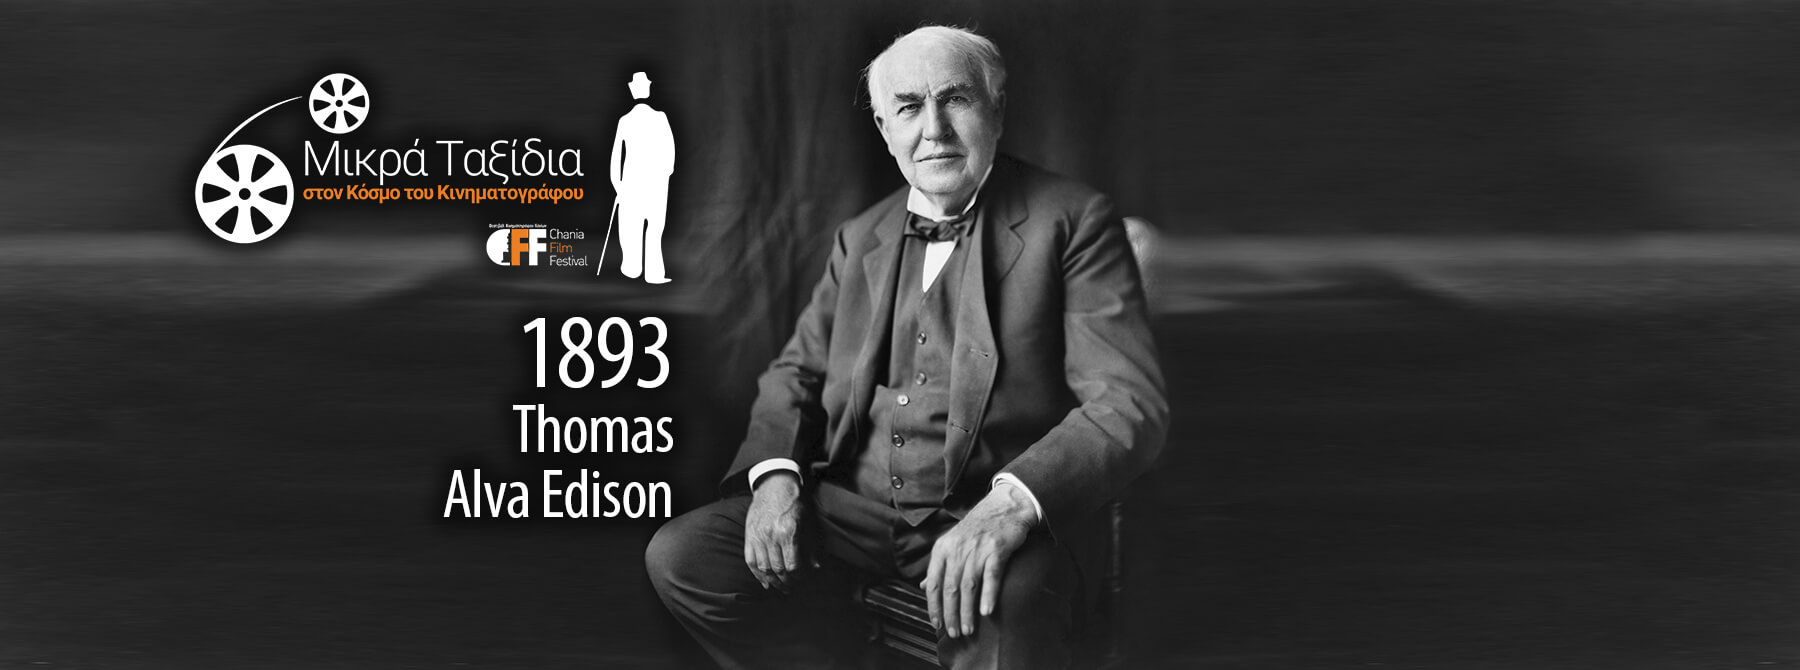 Μικρά Ταξίδια CFF Thomas Alva Edison